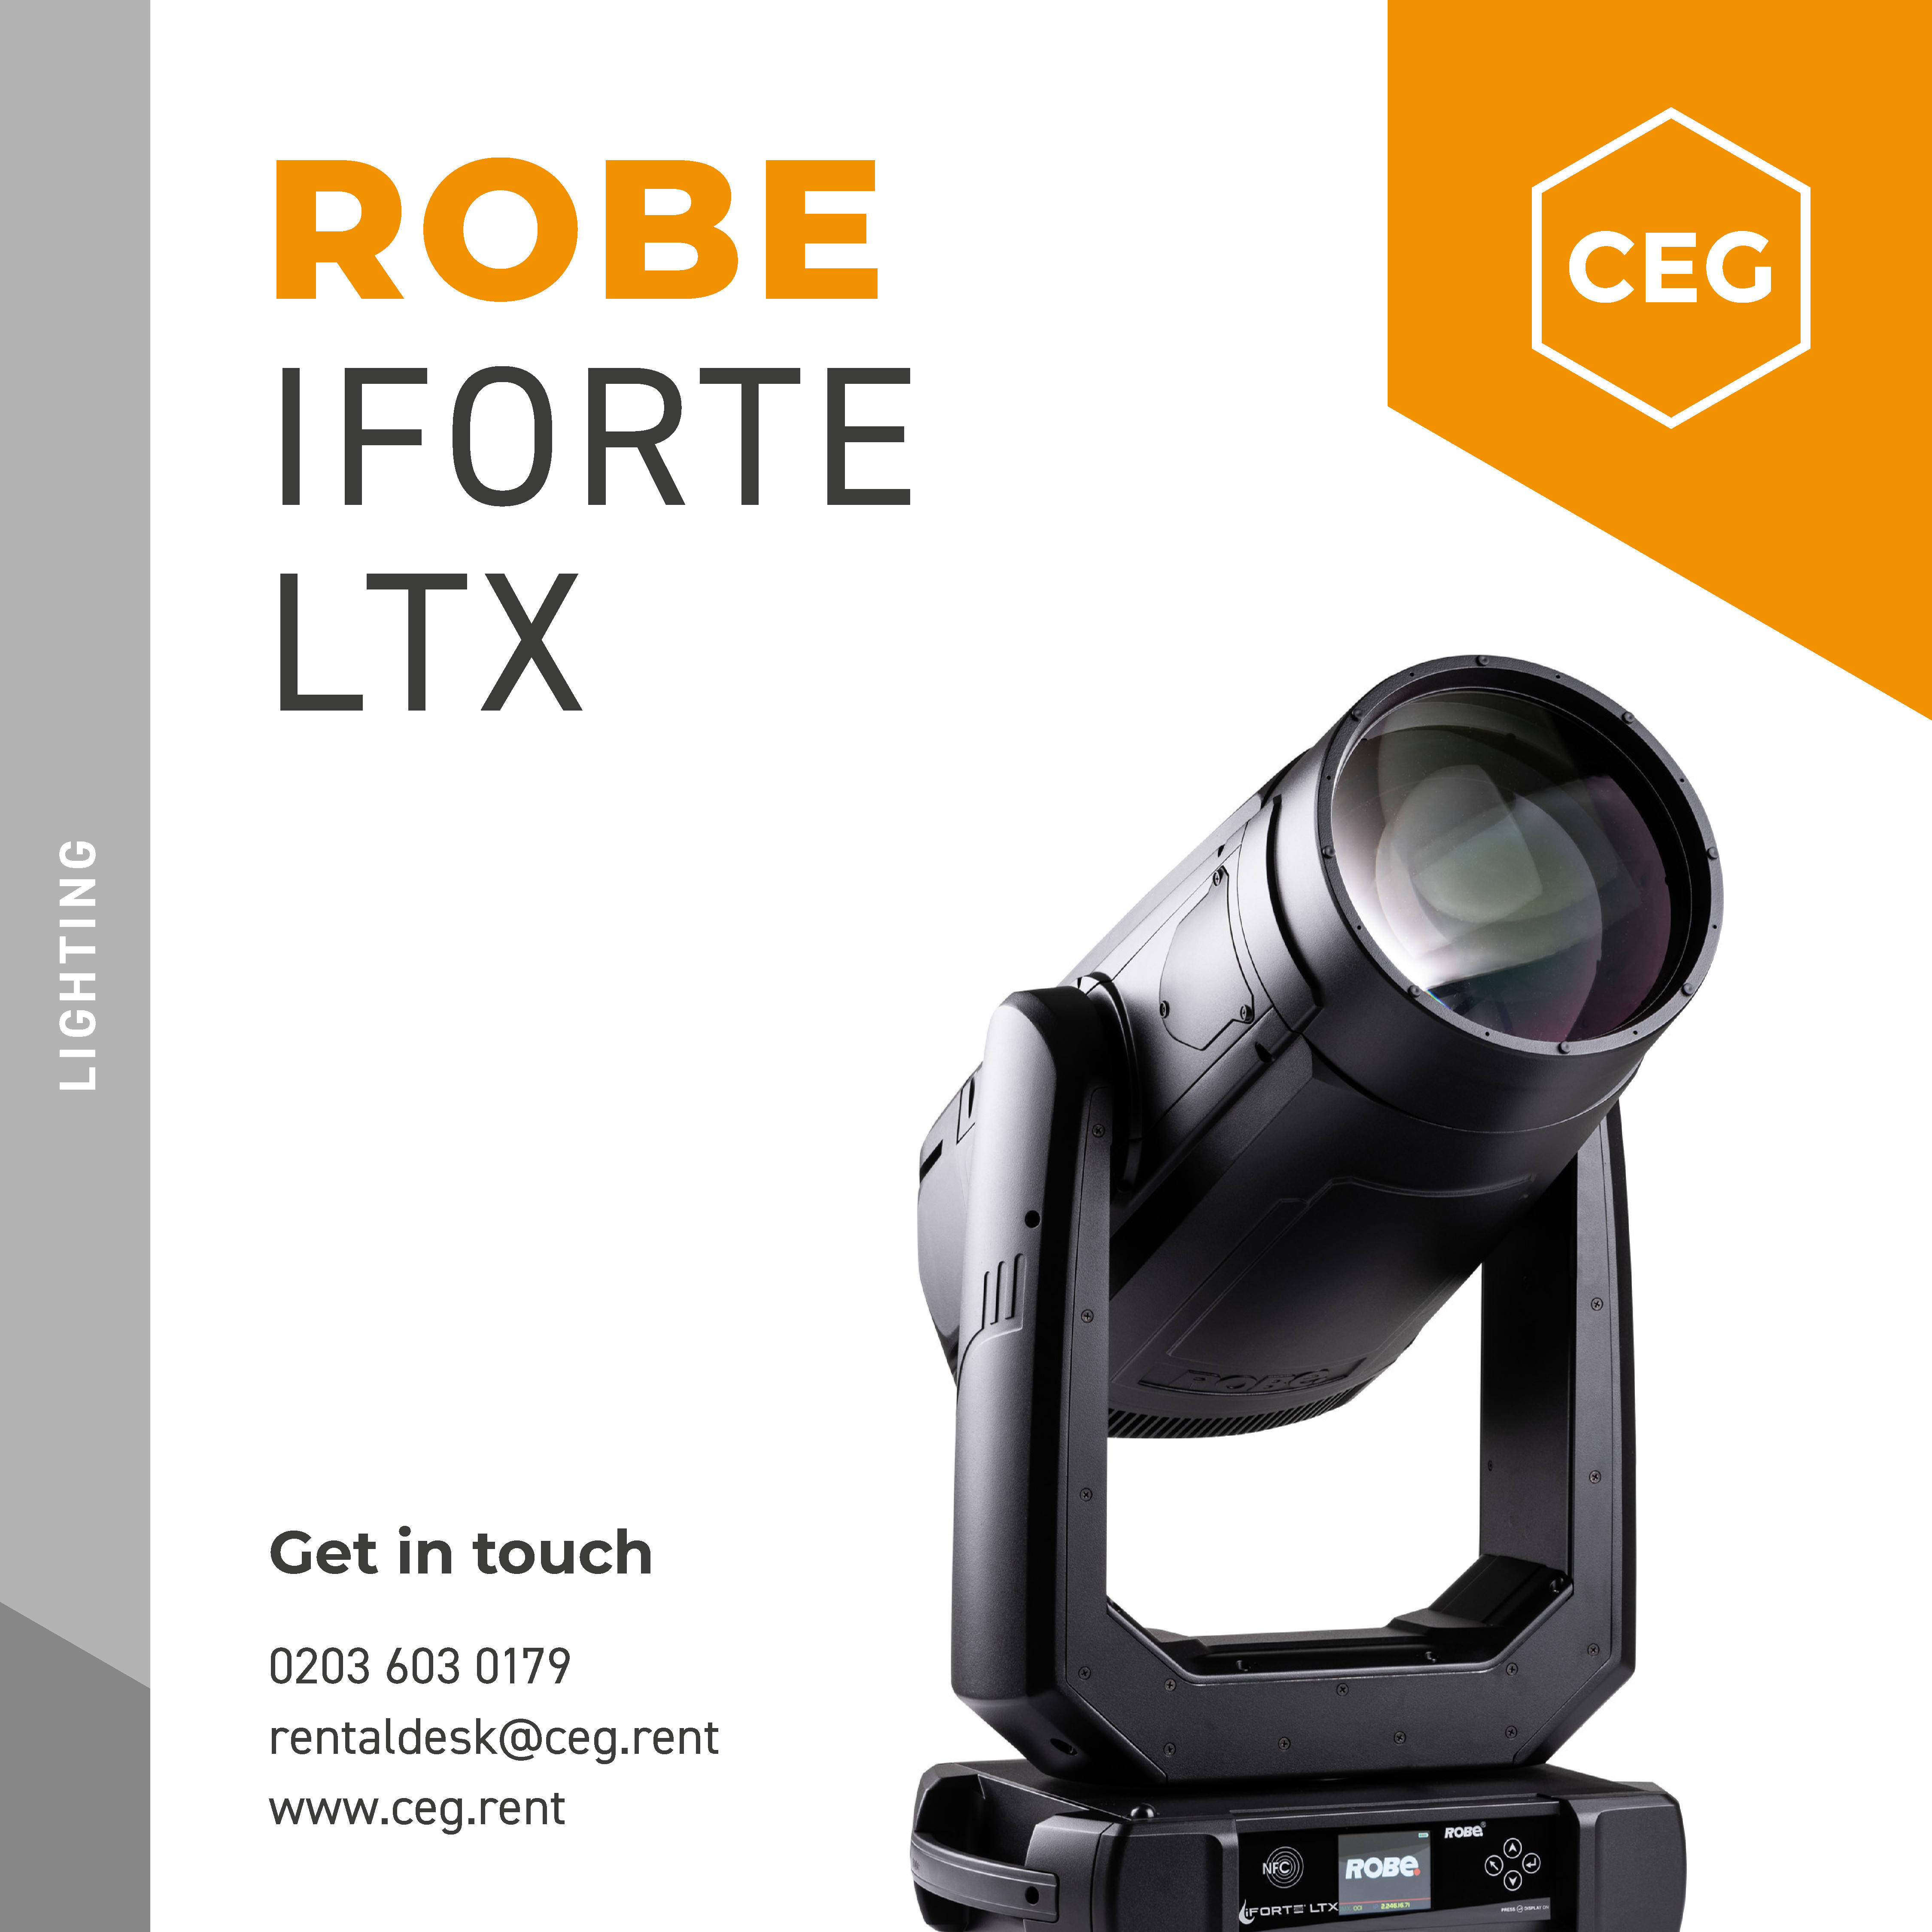 New to CEG - Robe iForte LTX